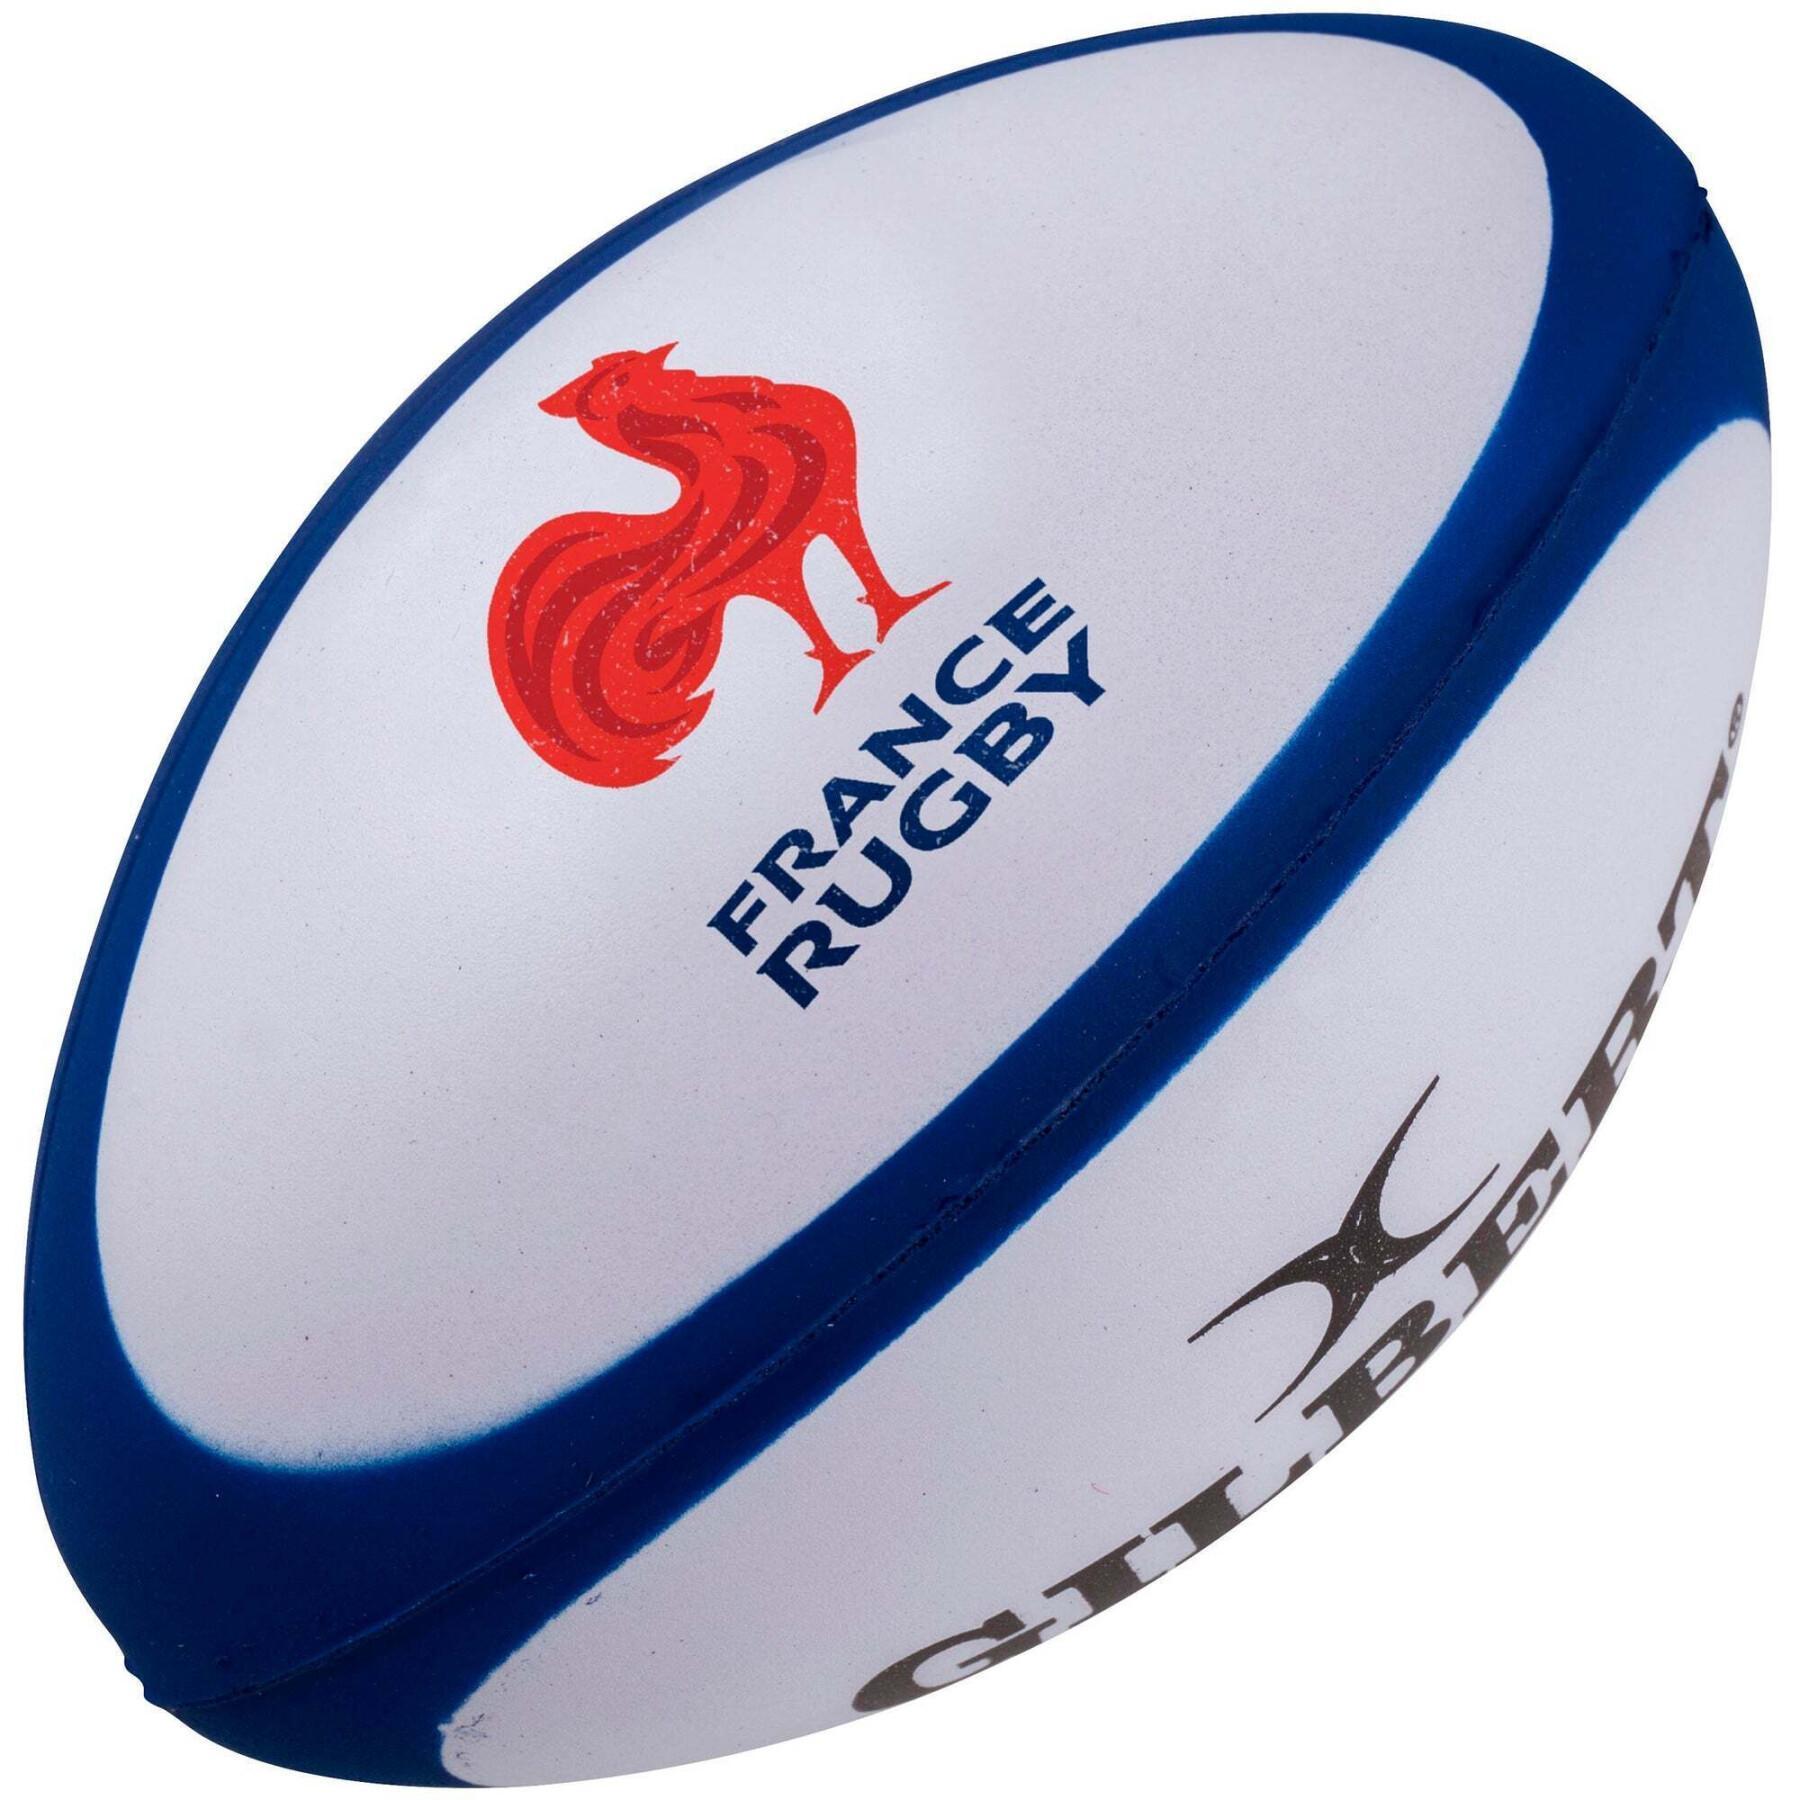 Confezione da 12 palloni da rugby France Dangle